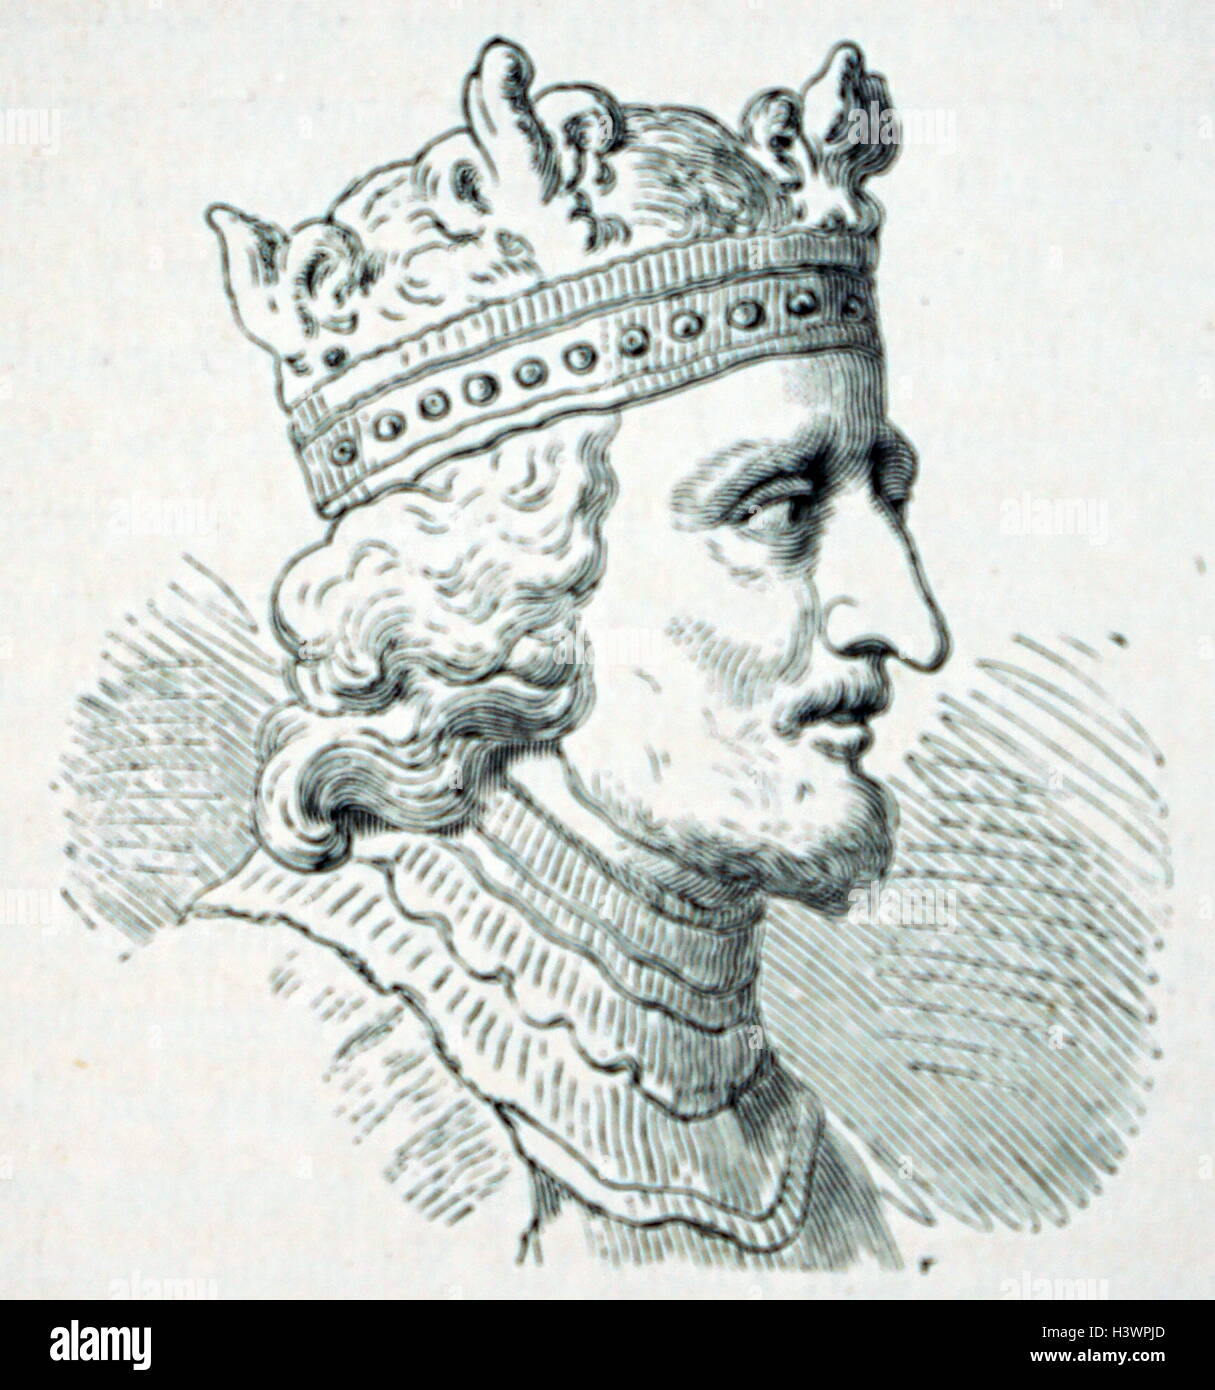 Kupferstich von Stephan, König von England (1095-1154) König von England und Graf von Boulogne. Vom 12. Jahrhundert Stockfoto